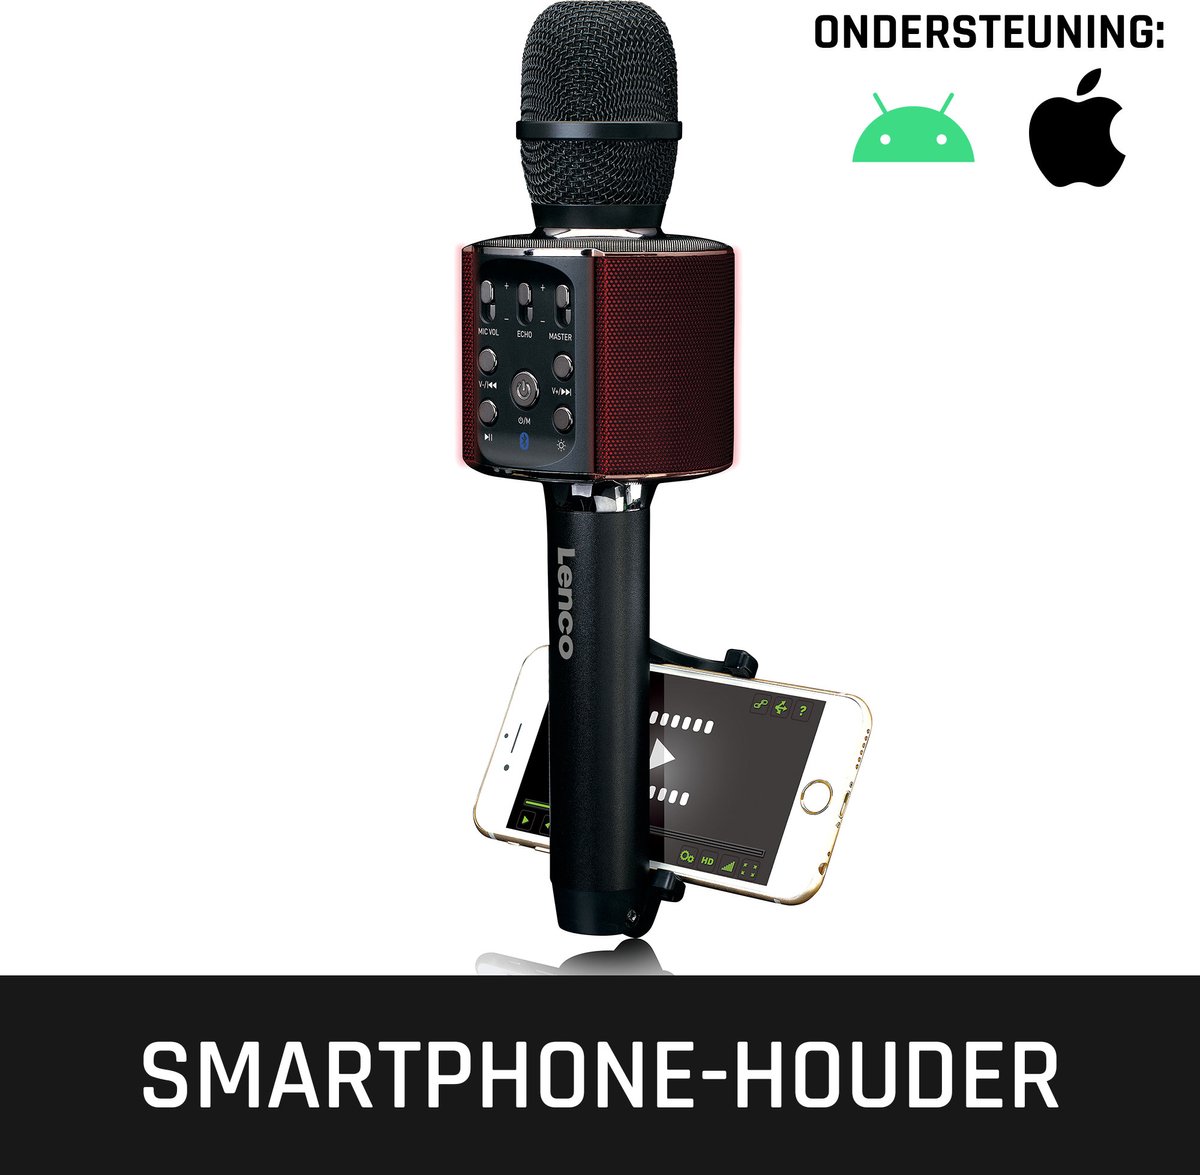 Kit Son Haute Qualité Familial KTV Microphone sans Fil Intégré Carte Audio  en Direct Haut-Parleur Karaoké Bluetooth(Noir )2857g -Time_square